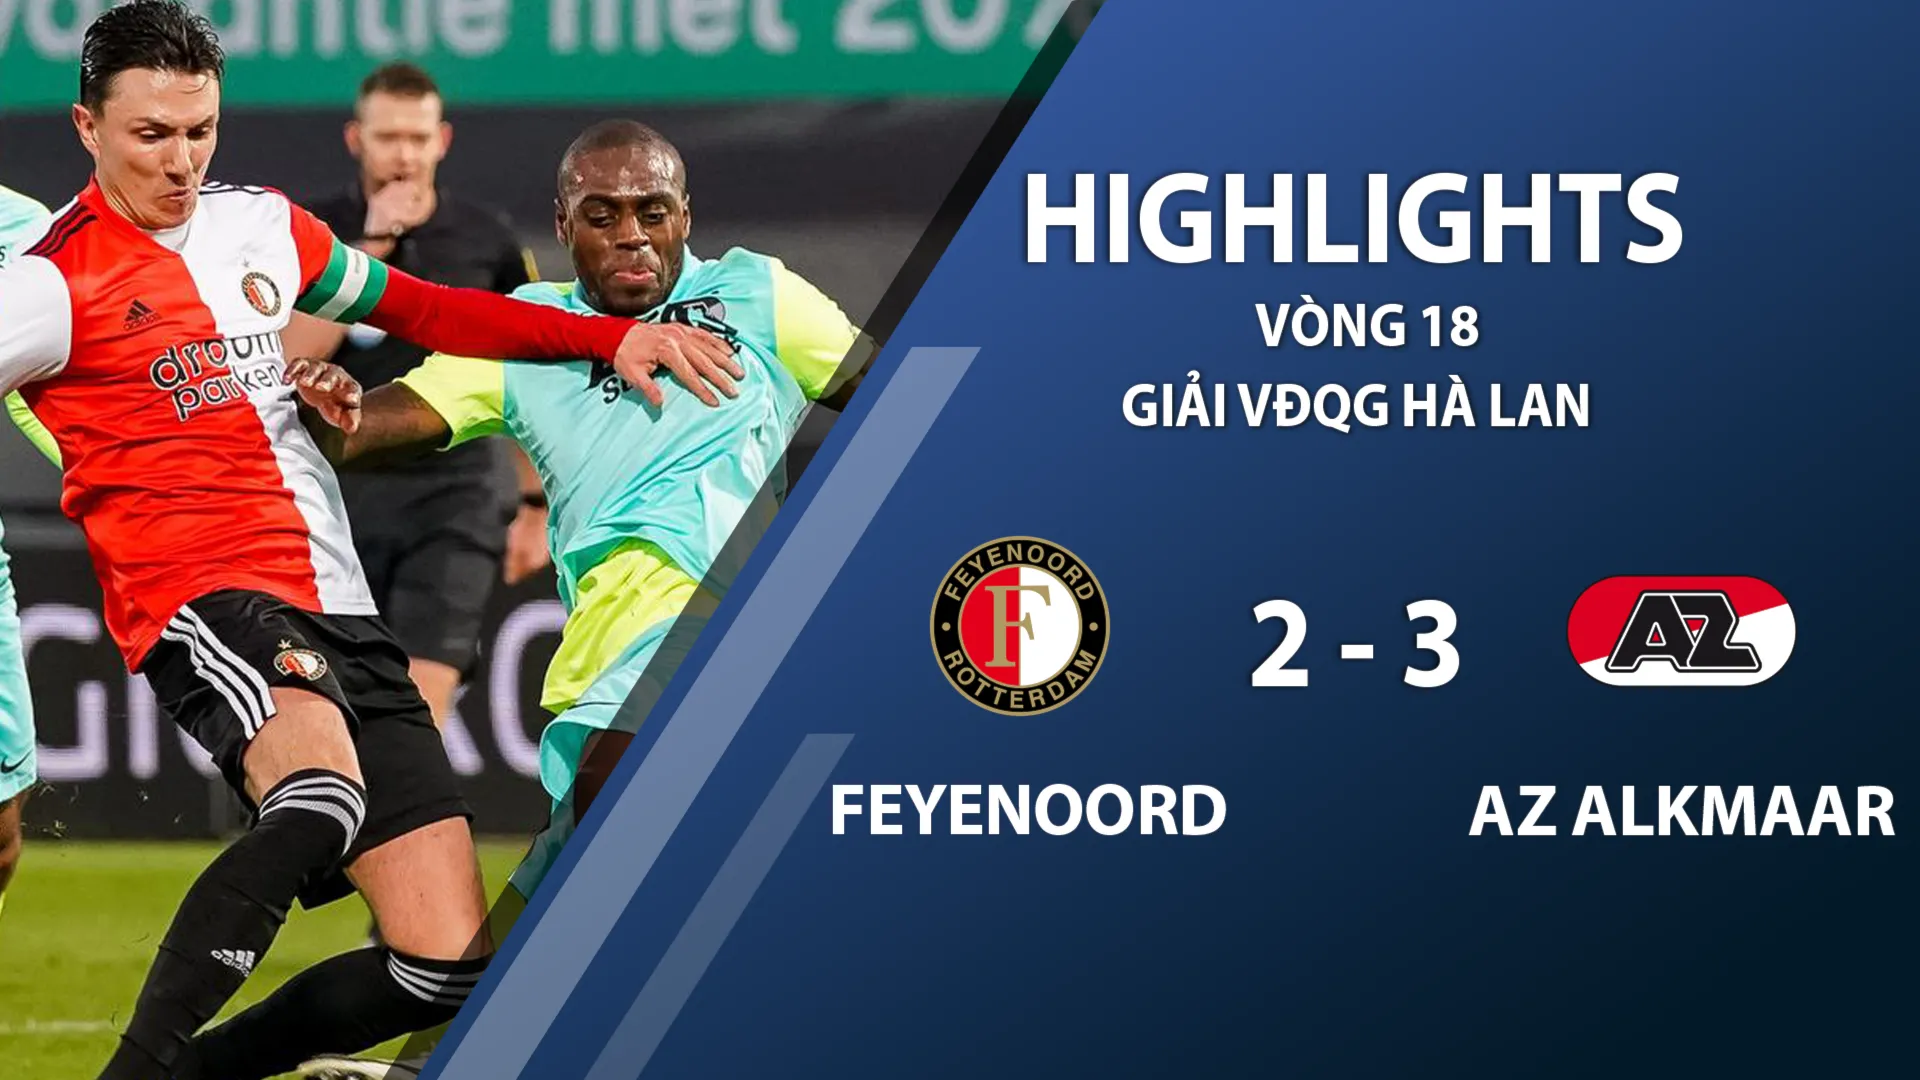 Highlights Feyenoord 2-3 AZ Alkmaar (vòng 18 giải VĐQG Hà Lan 2020/21)